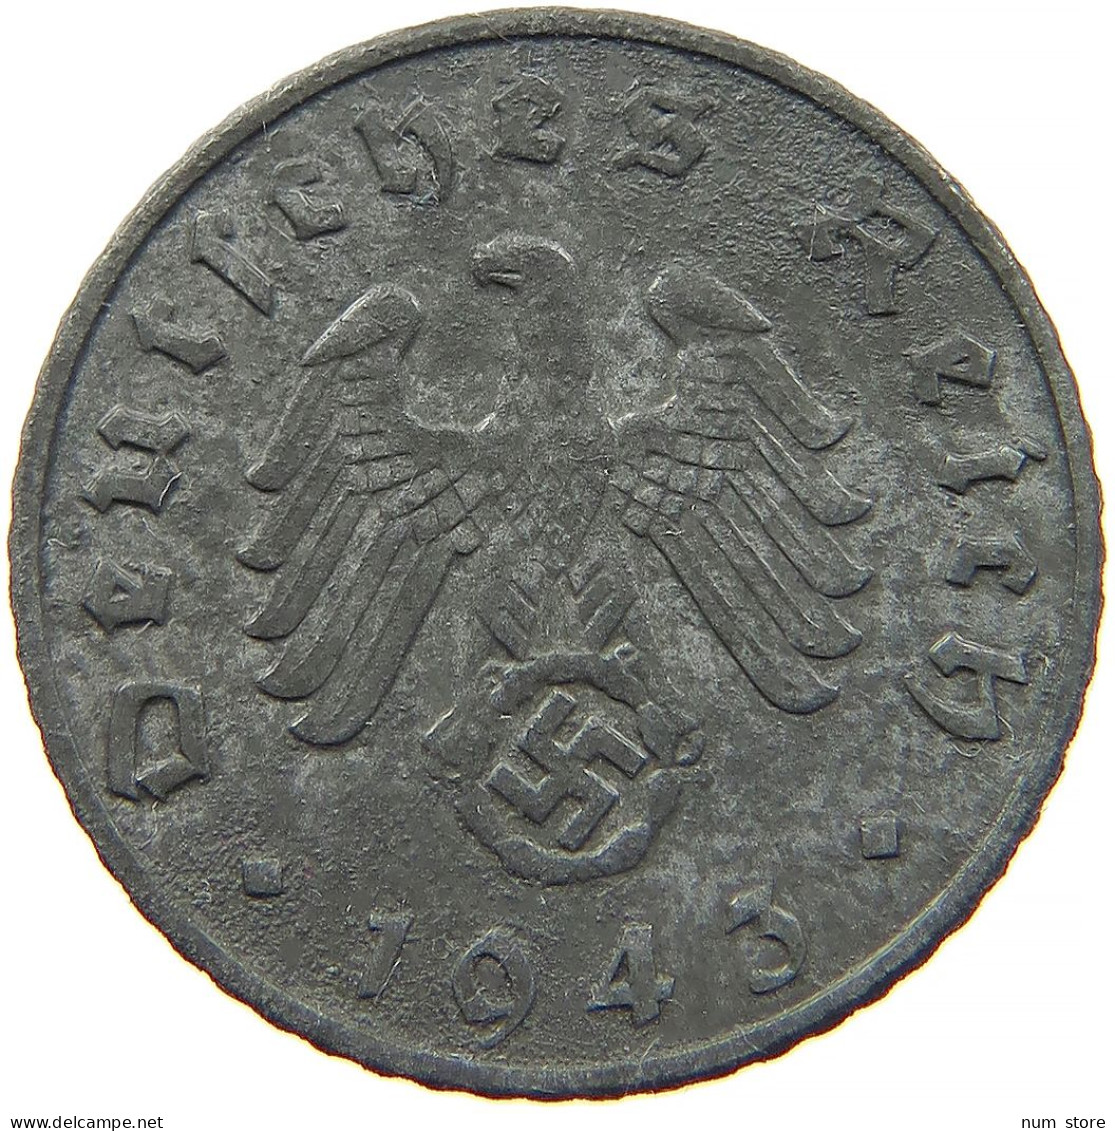 GERMANY 5 REICHSPFENNIG 1943 F #s091 0873 - 5 Reichspfennig